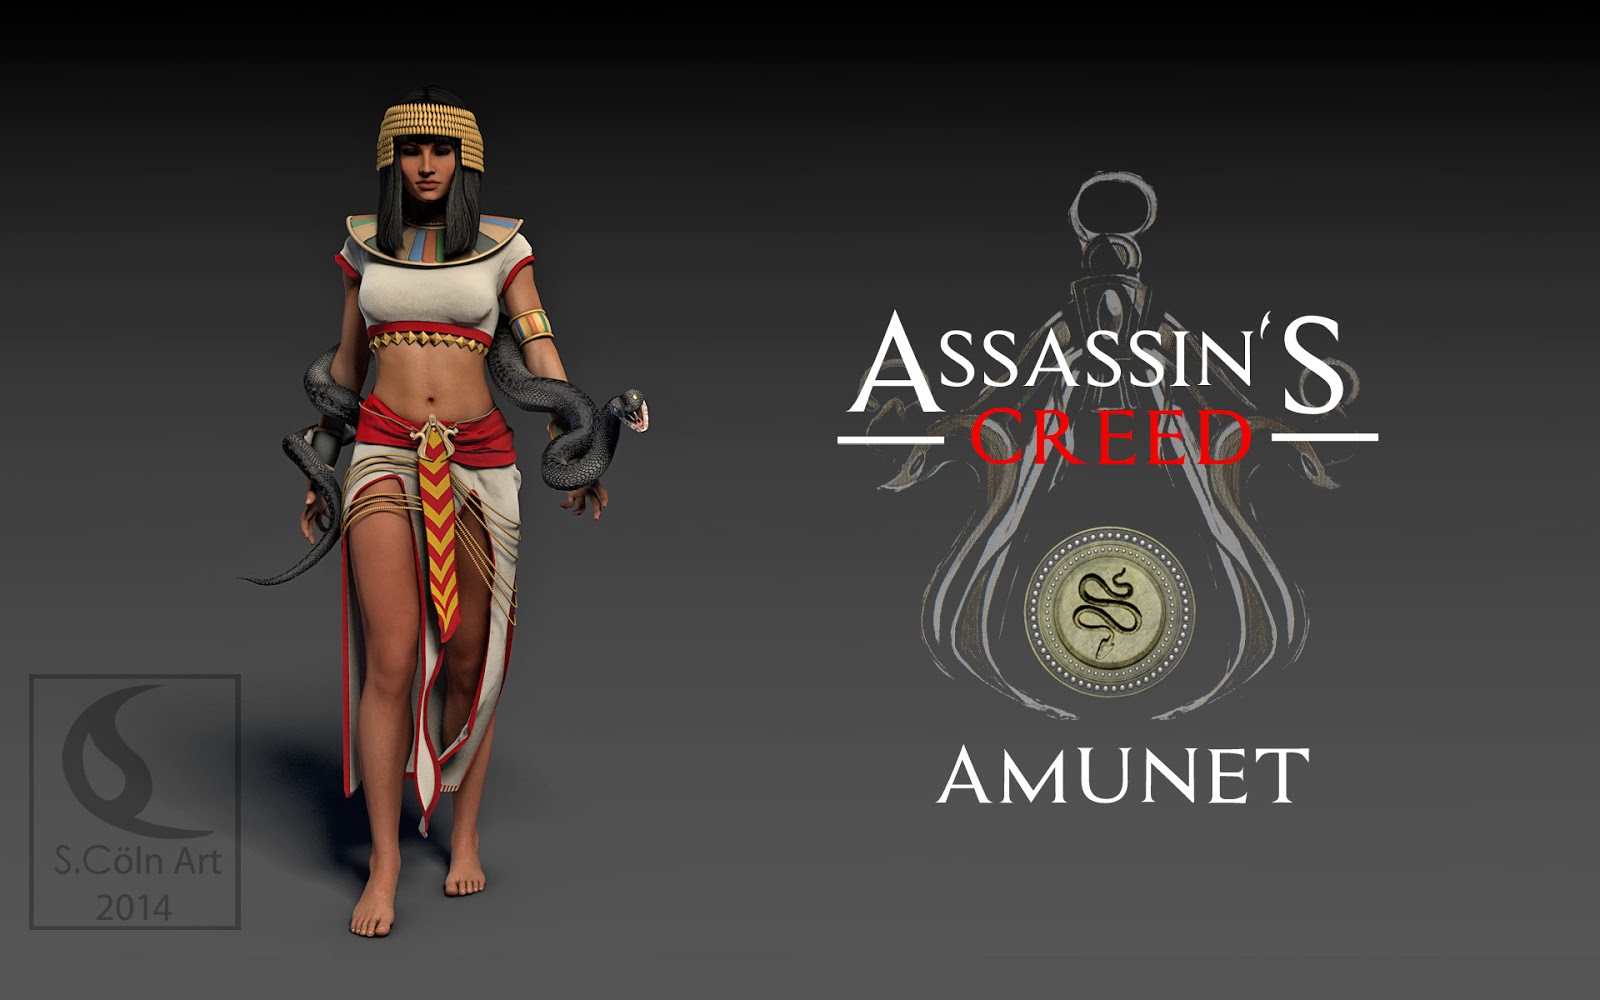 Os Ocultos', 1º DLC de Assassin's Creed Origins, ganha trailer focado em  história 